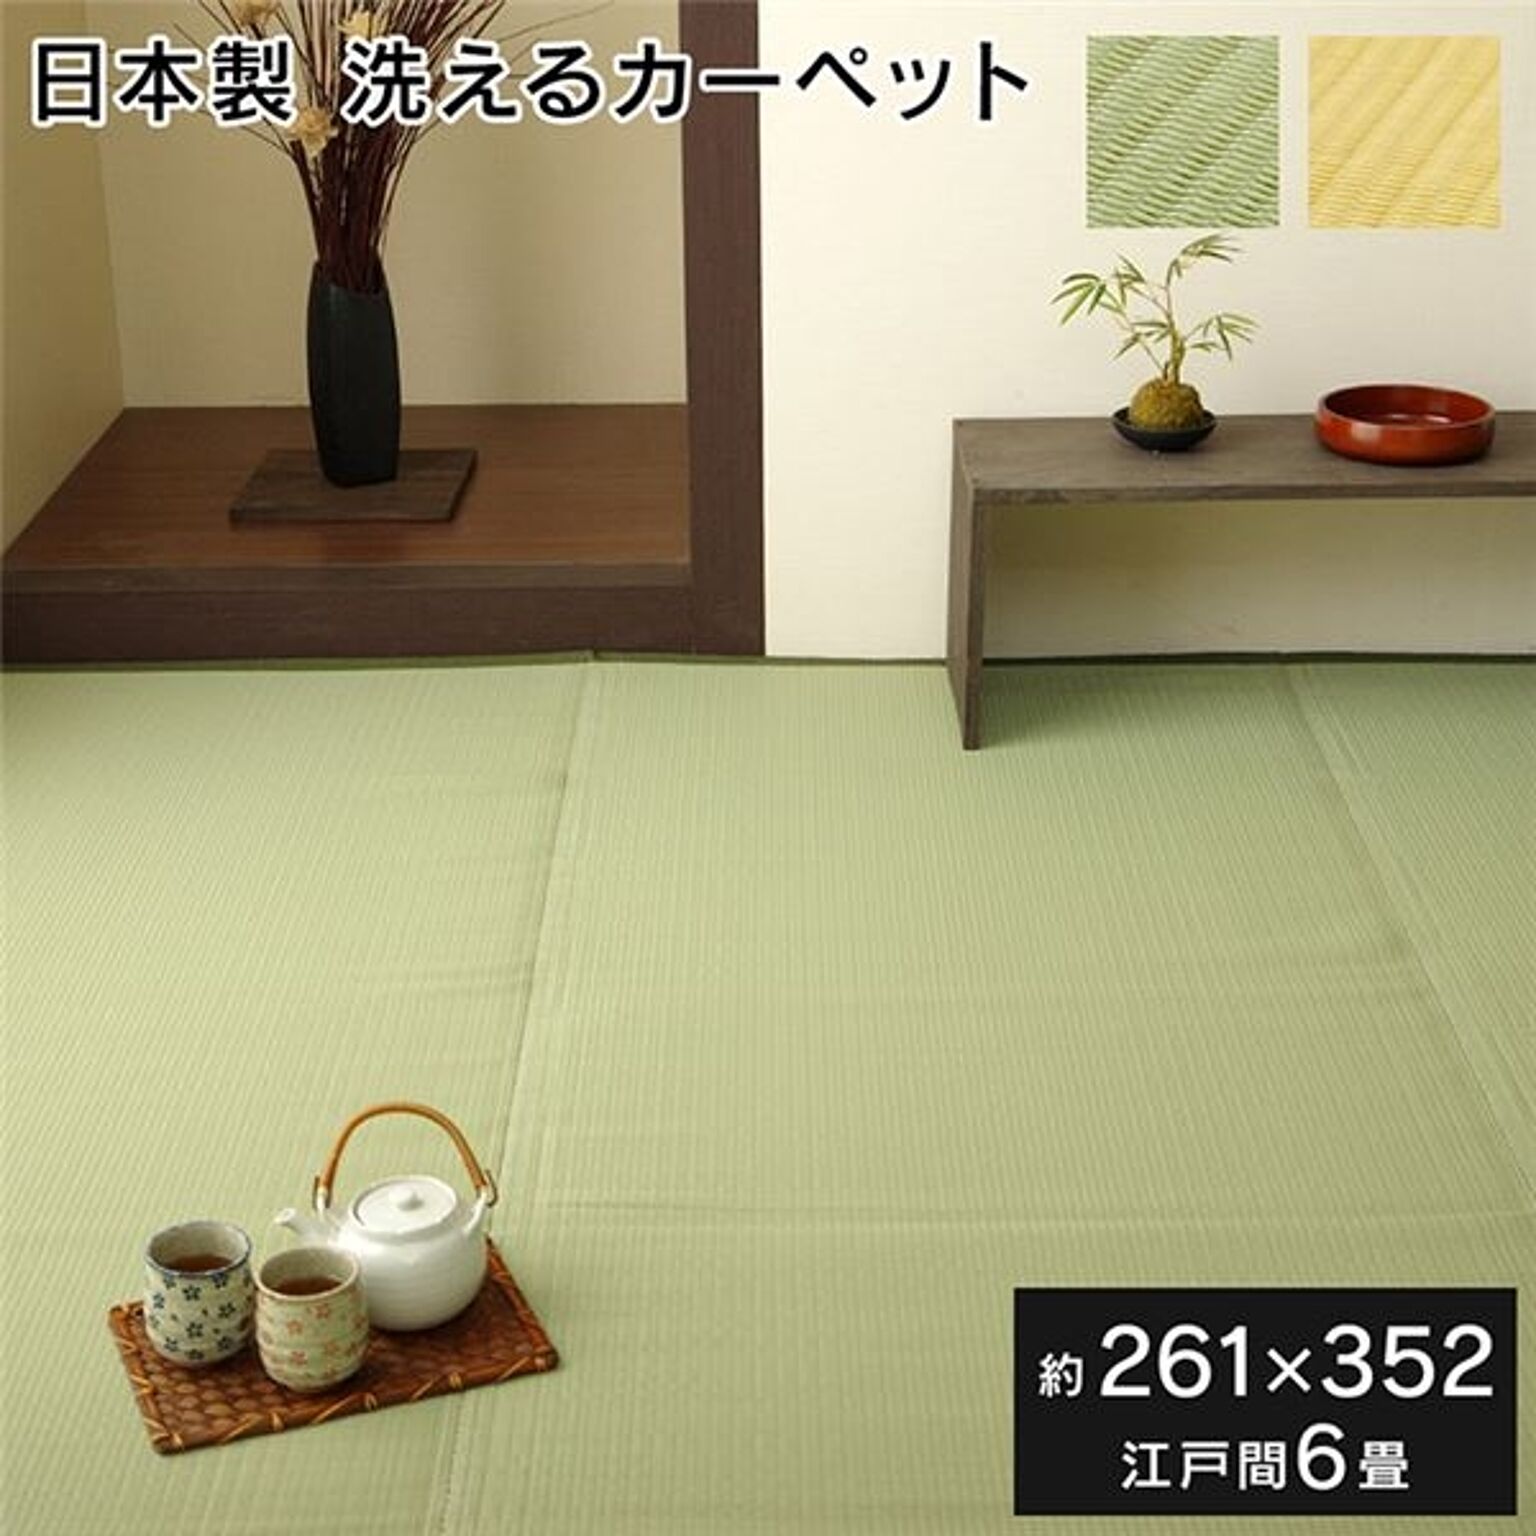 イケヒコ・コーポレーション 洗える作業用マット、江戸間6畳サイズ